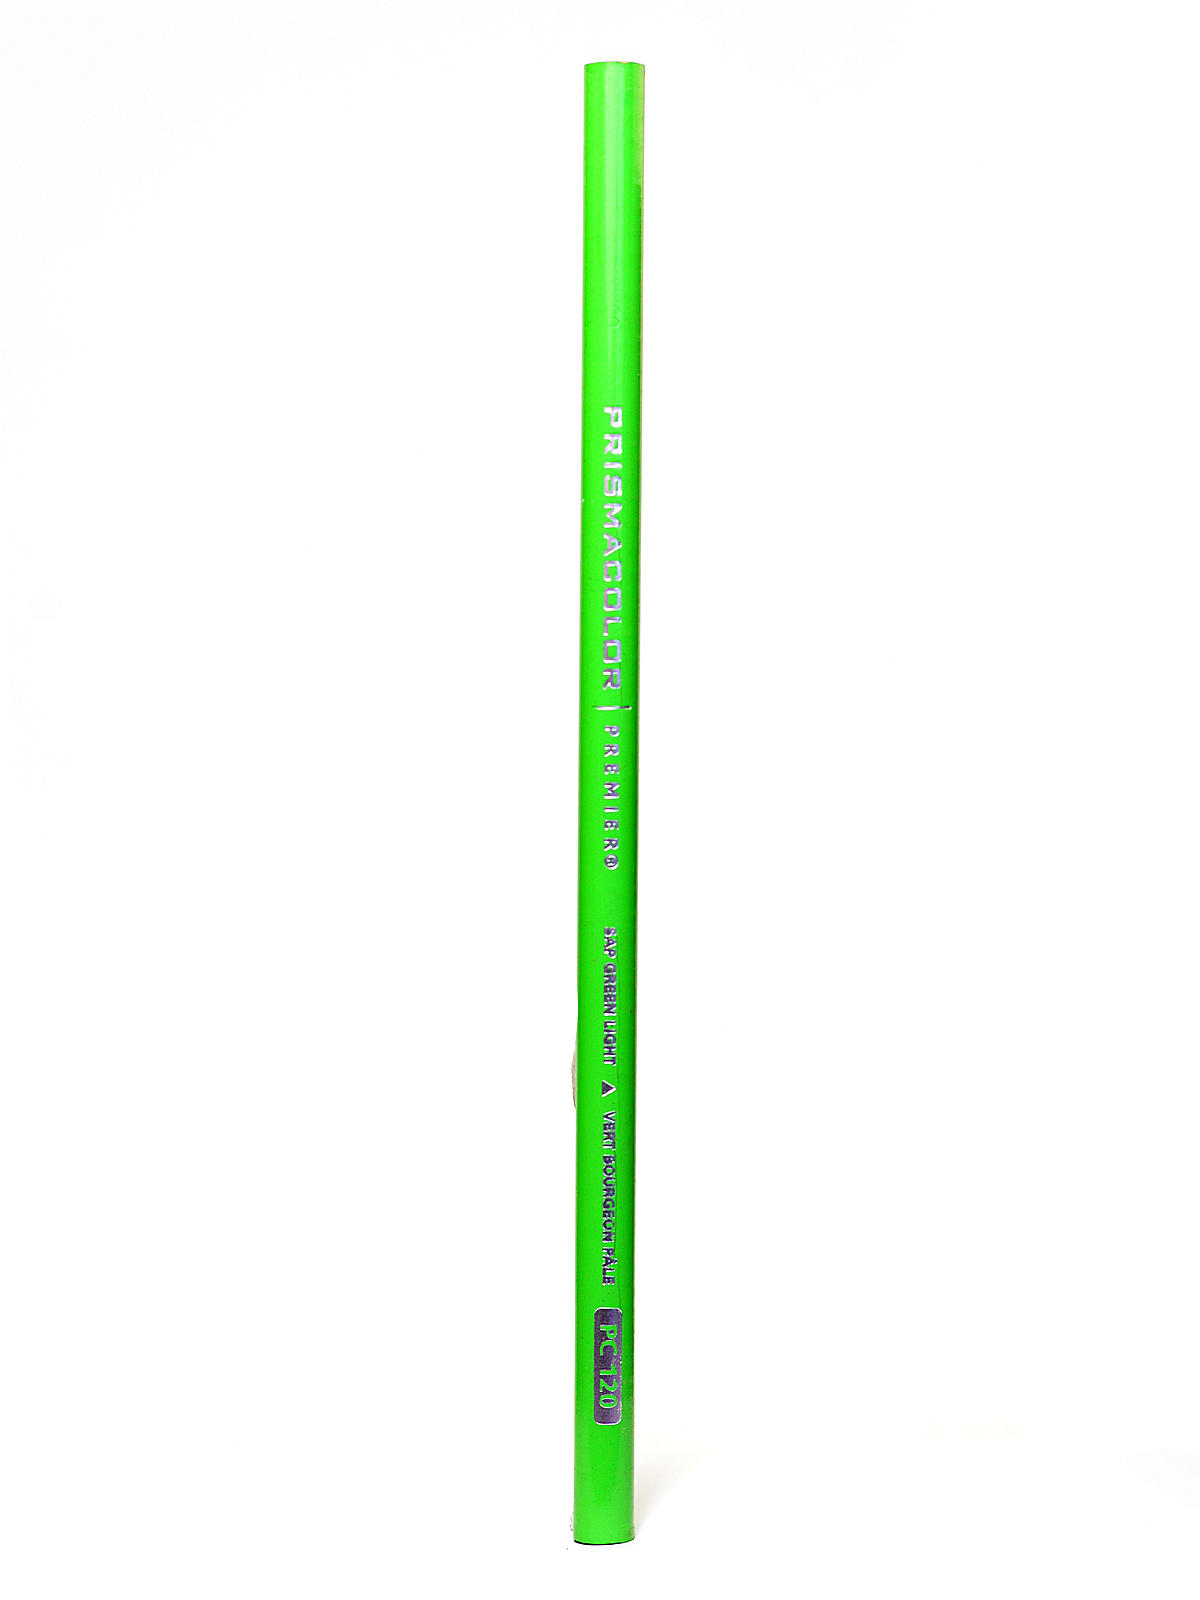 Premier Colored Pencils (each) Sap Green Light 120